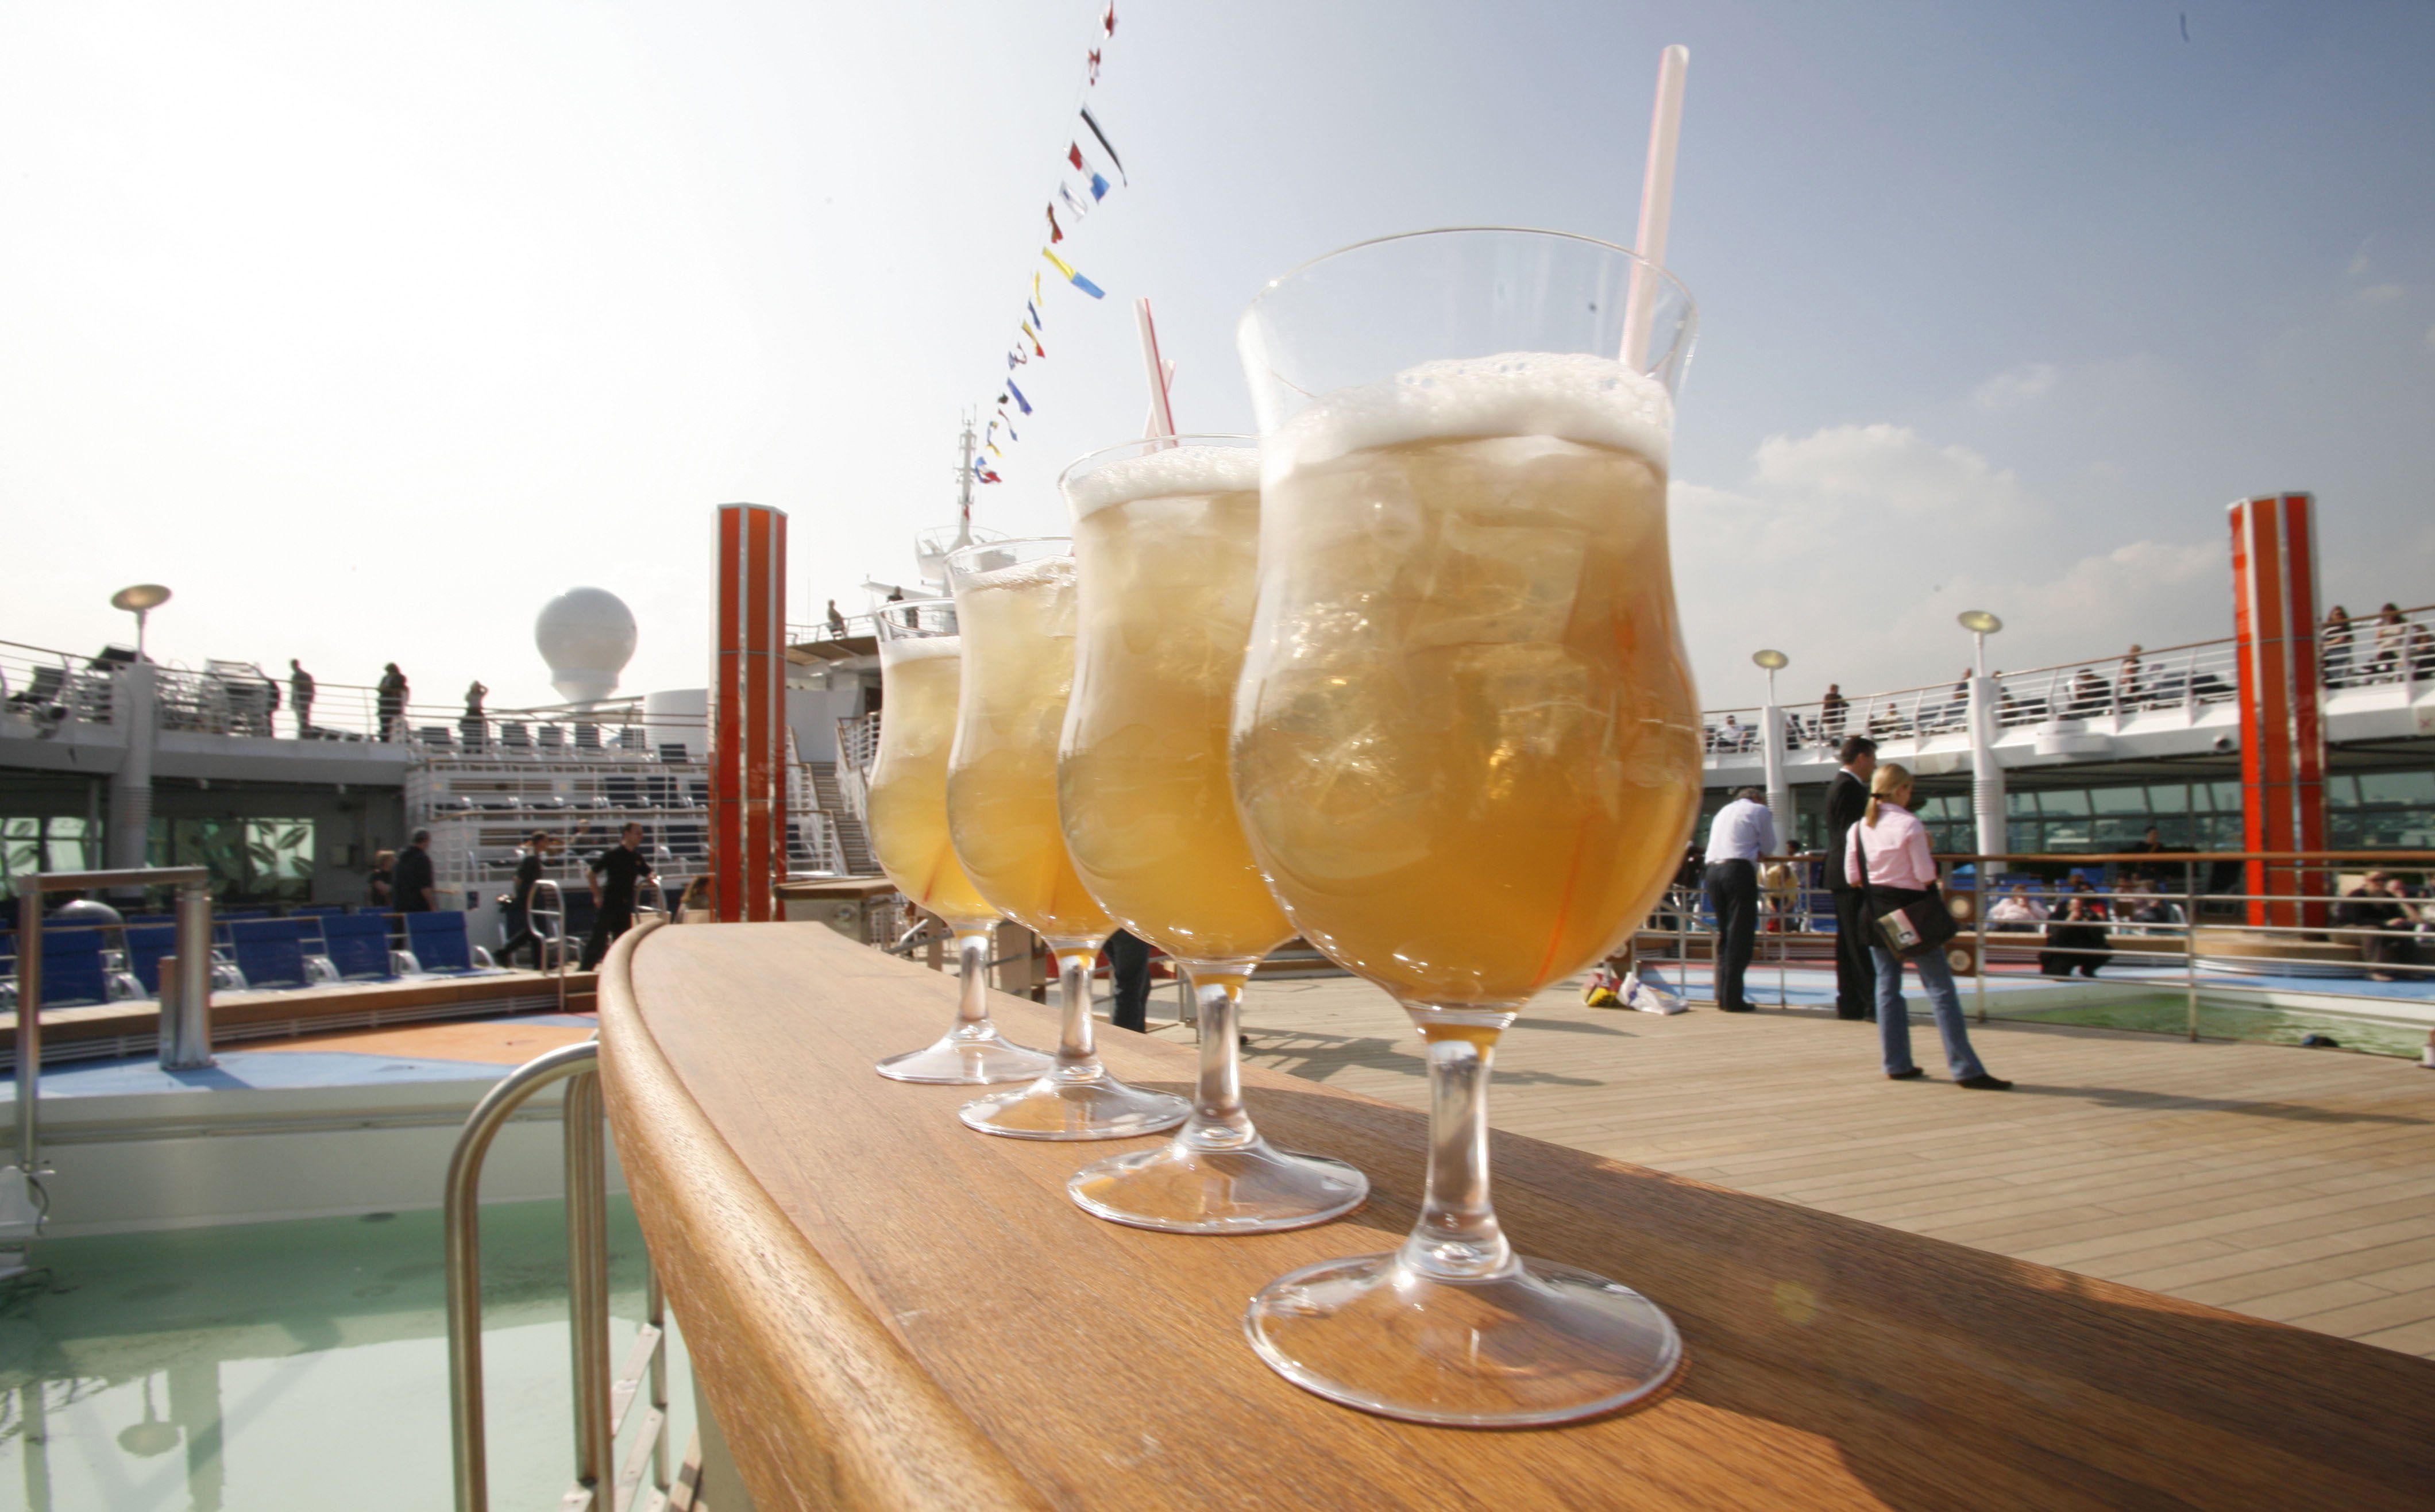 Más alcohol libre de impuestos: Hacienda prepara una orden para agilizar su venta en los cruceros